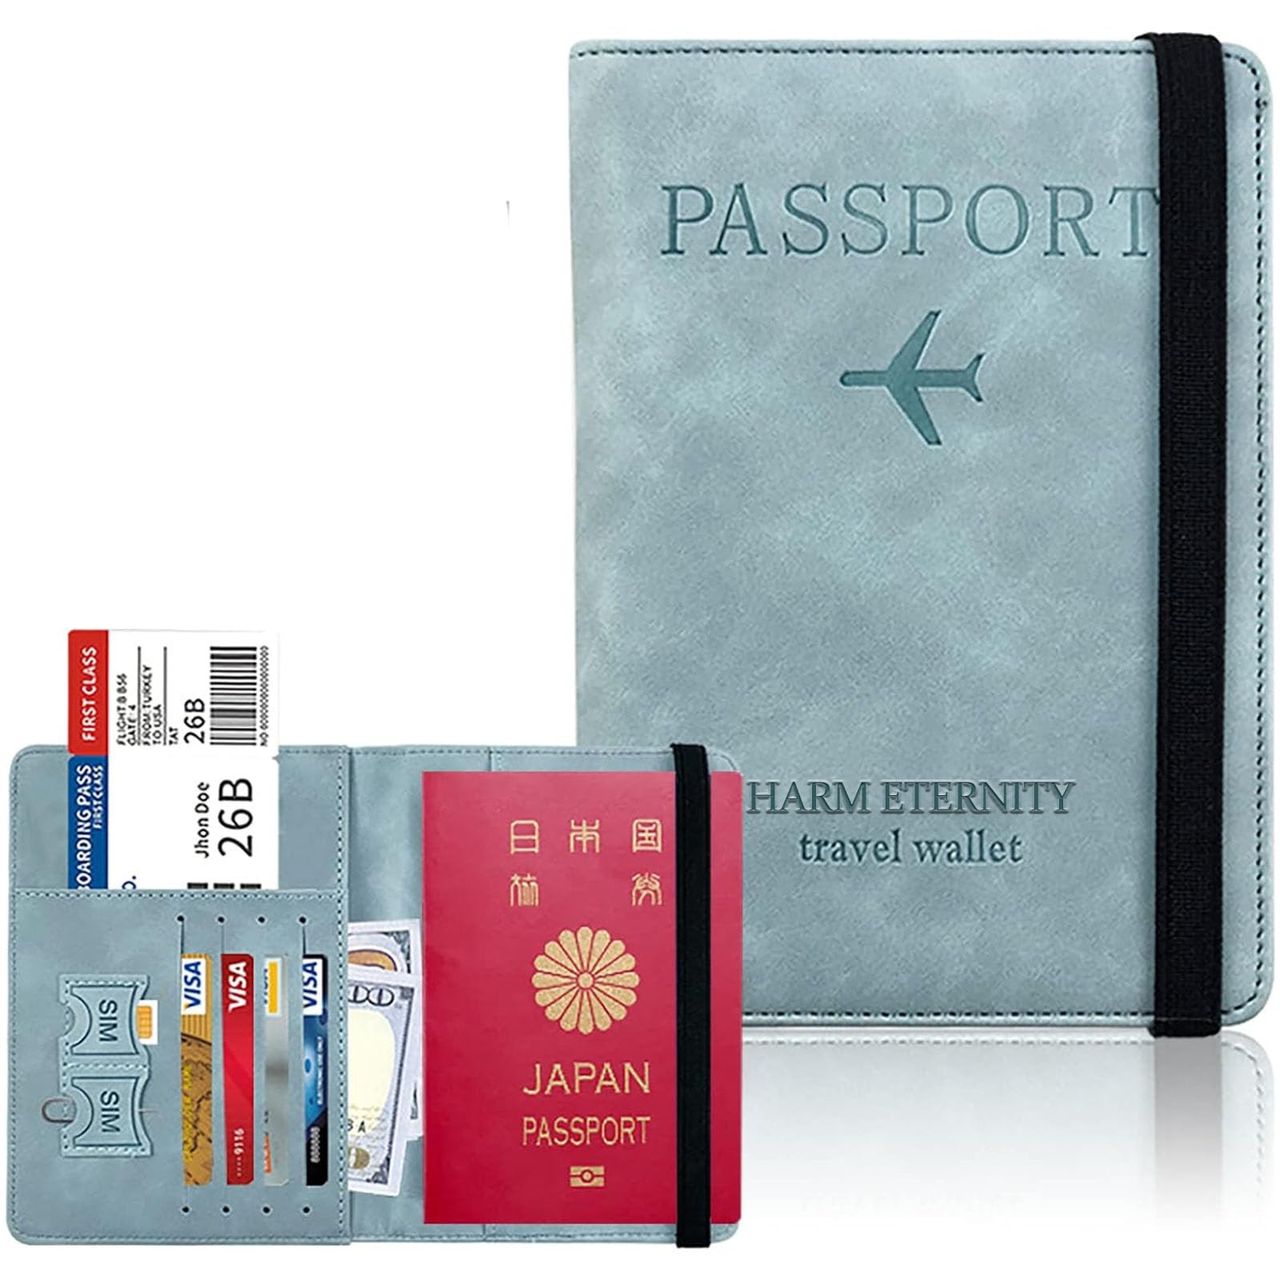 Vetntihose フェイクレザー パスポートケース スキミング防止 パスポートカバー カードケース 多機能収納ポケット付き 国内海外旅行用..